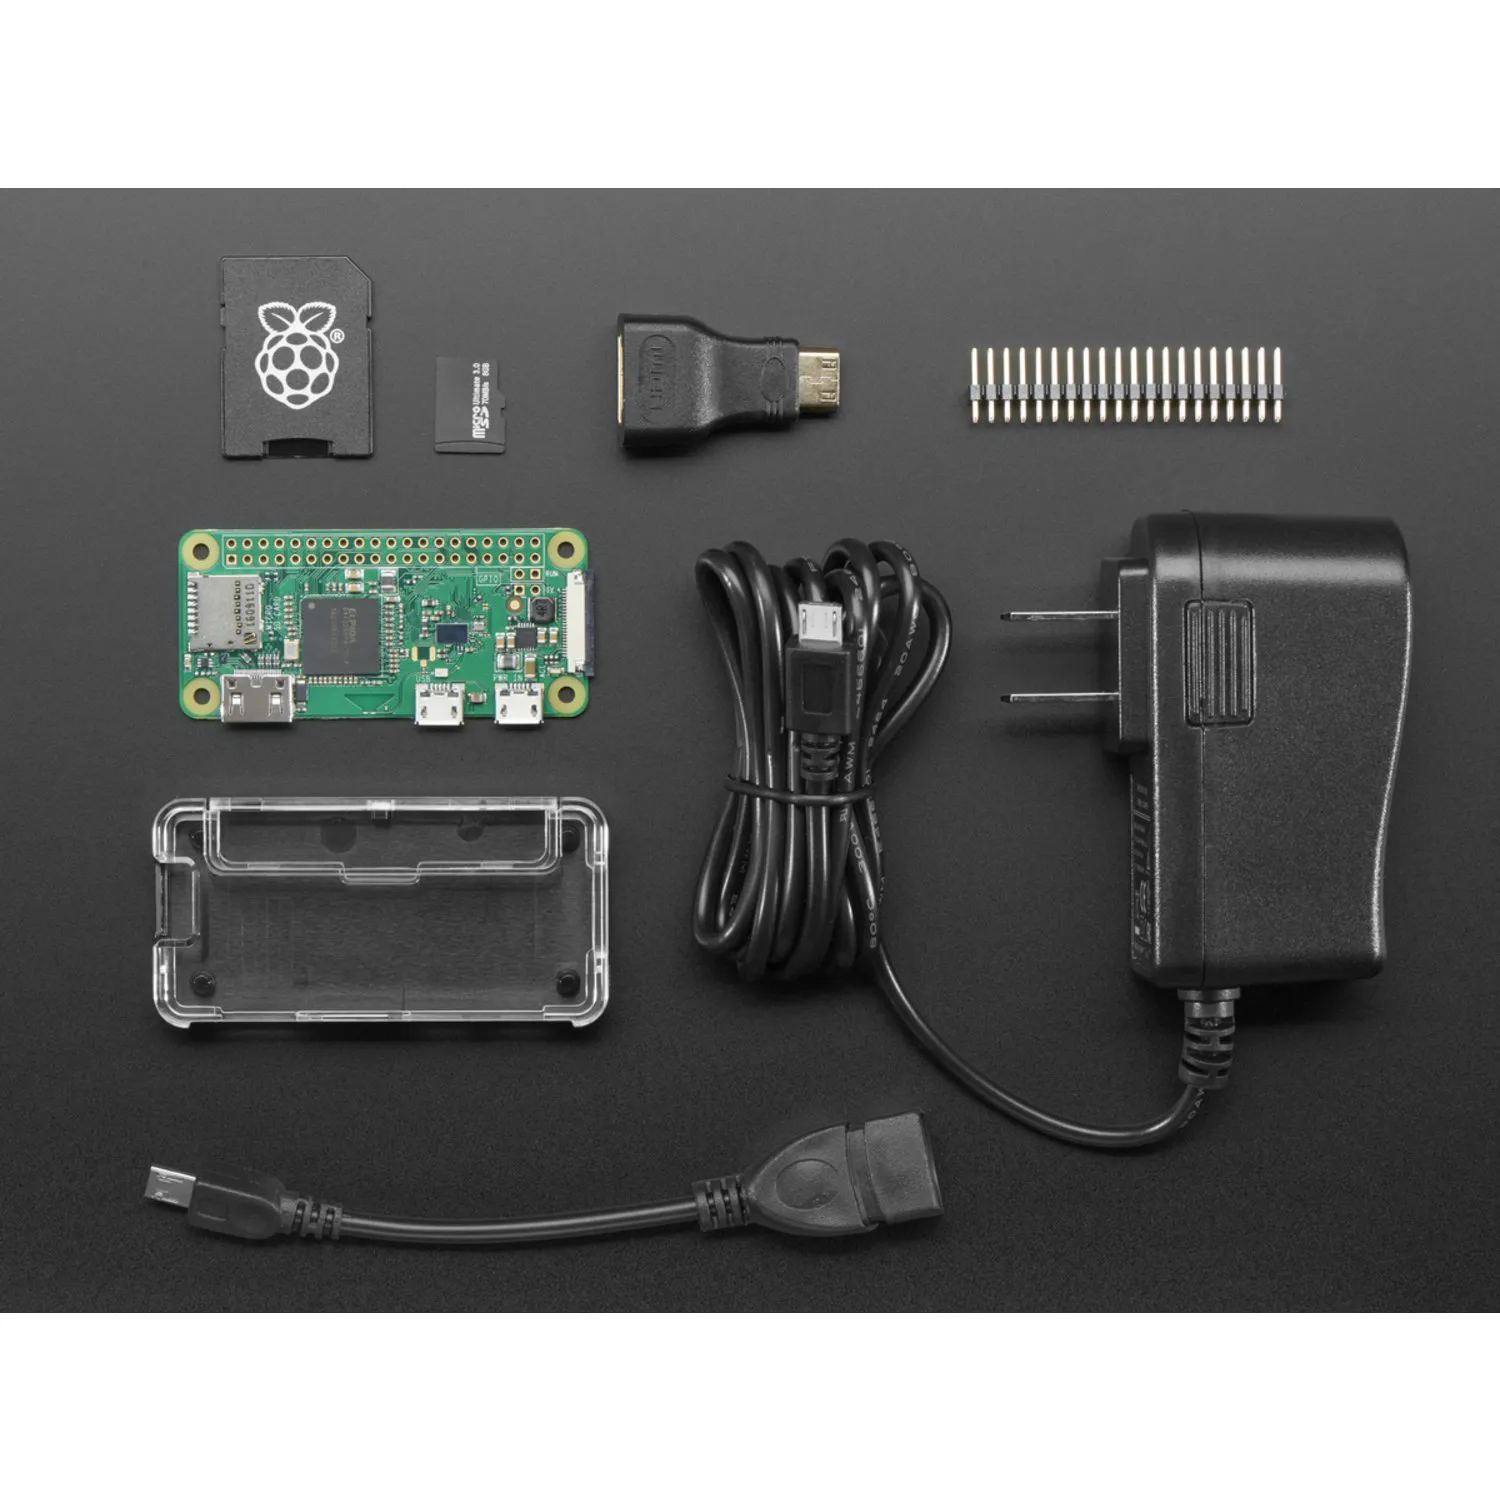 Photo of Raspberry Pi Zero W Budget Pack - Includes Pi Zero W